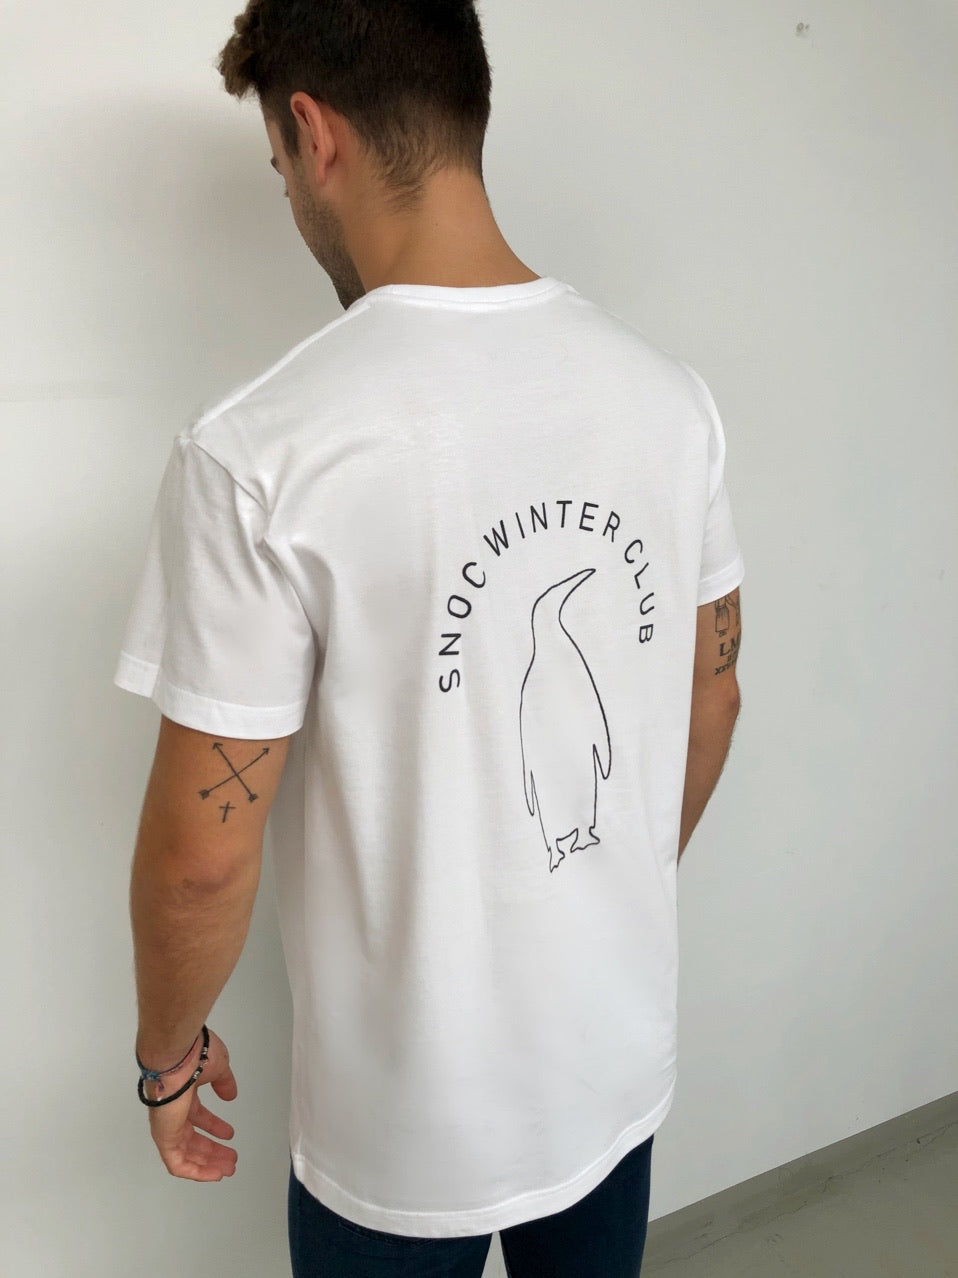 Camisetas logo pulpo SNOC - CAMISETA WINTER CLUB